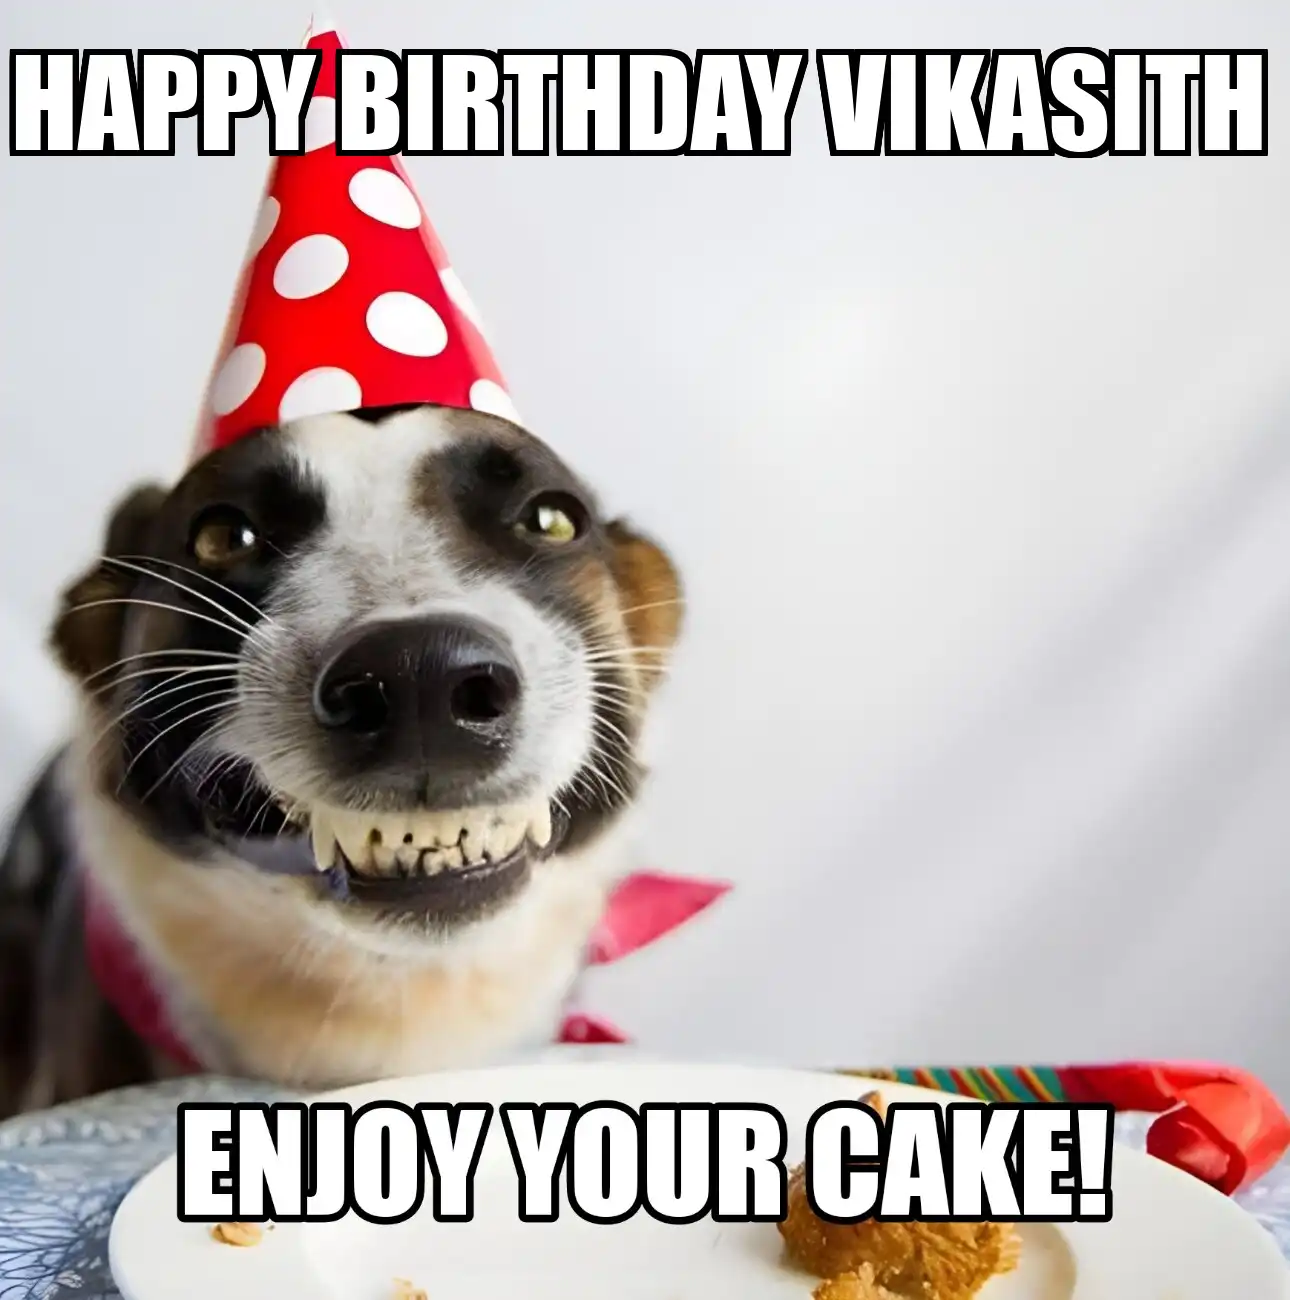 Happy Birthday Vikasith Enjoy Your Cake Dog Meme